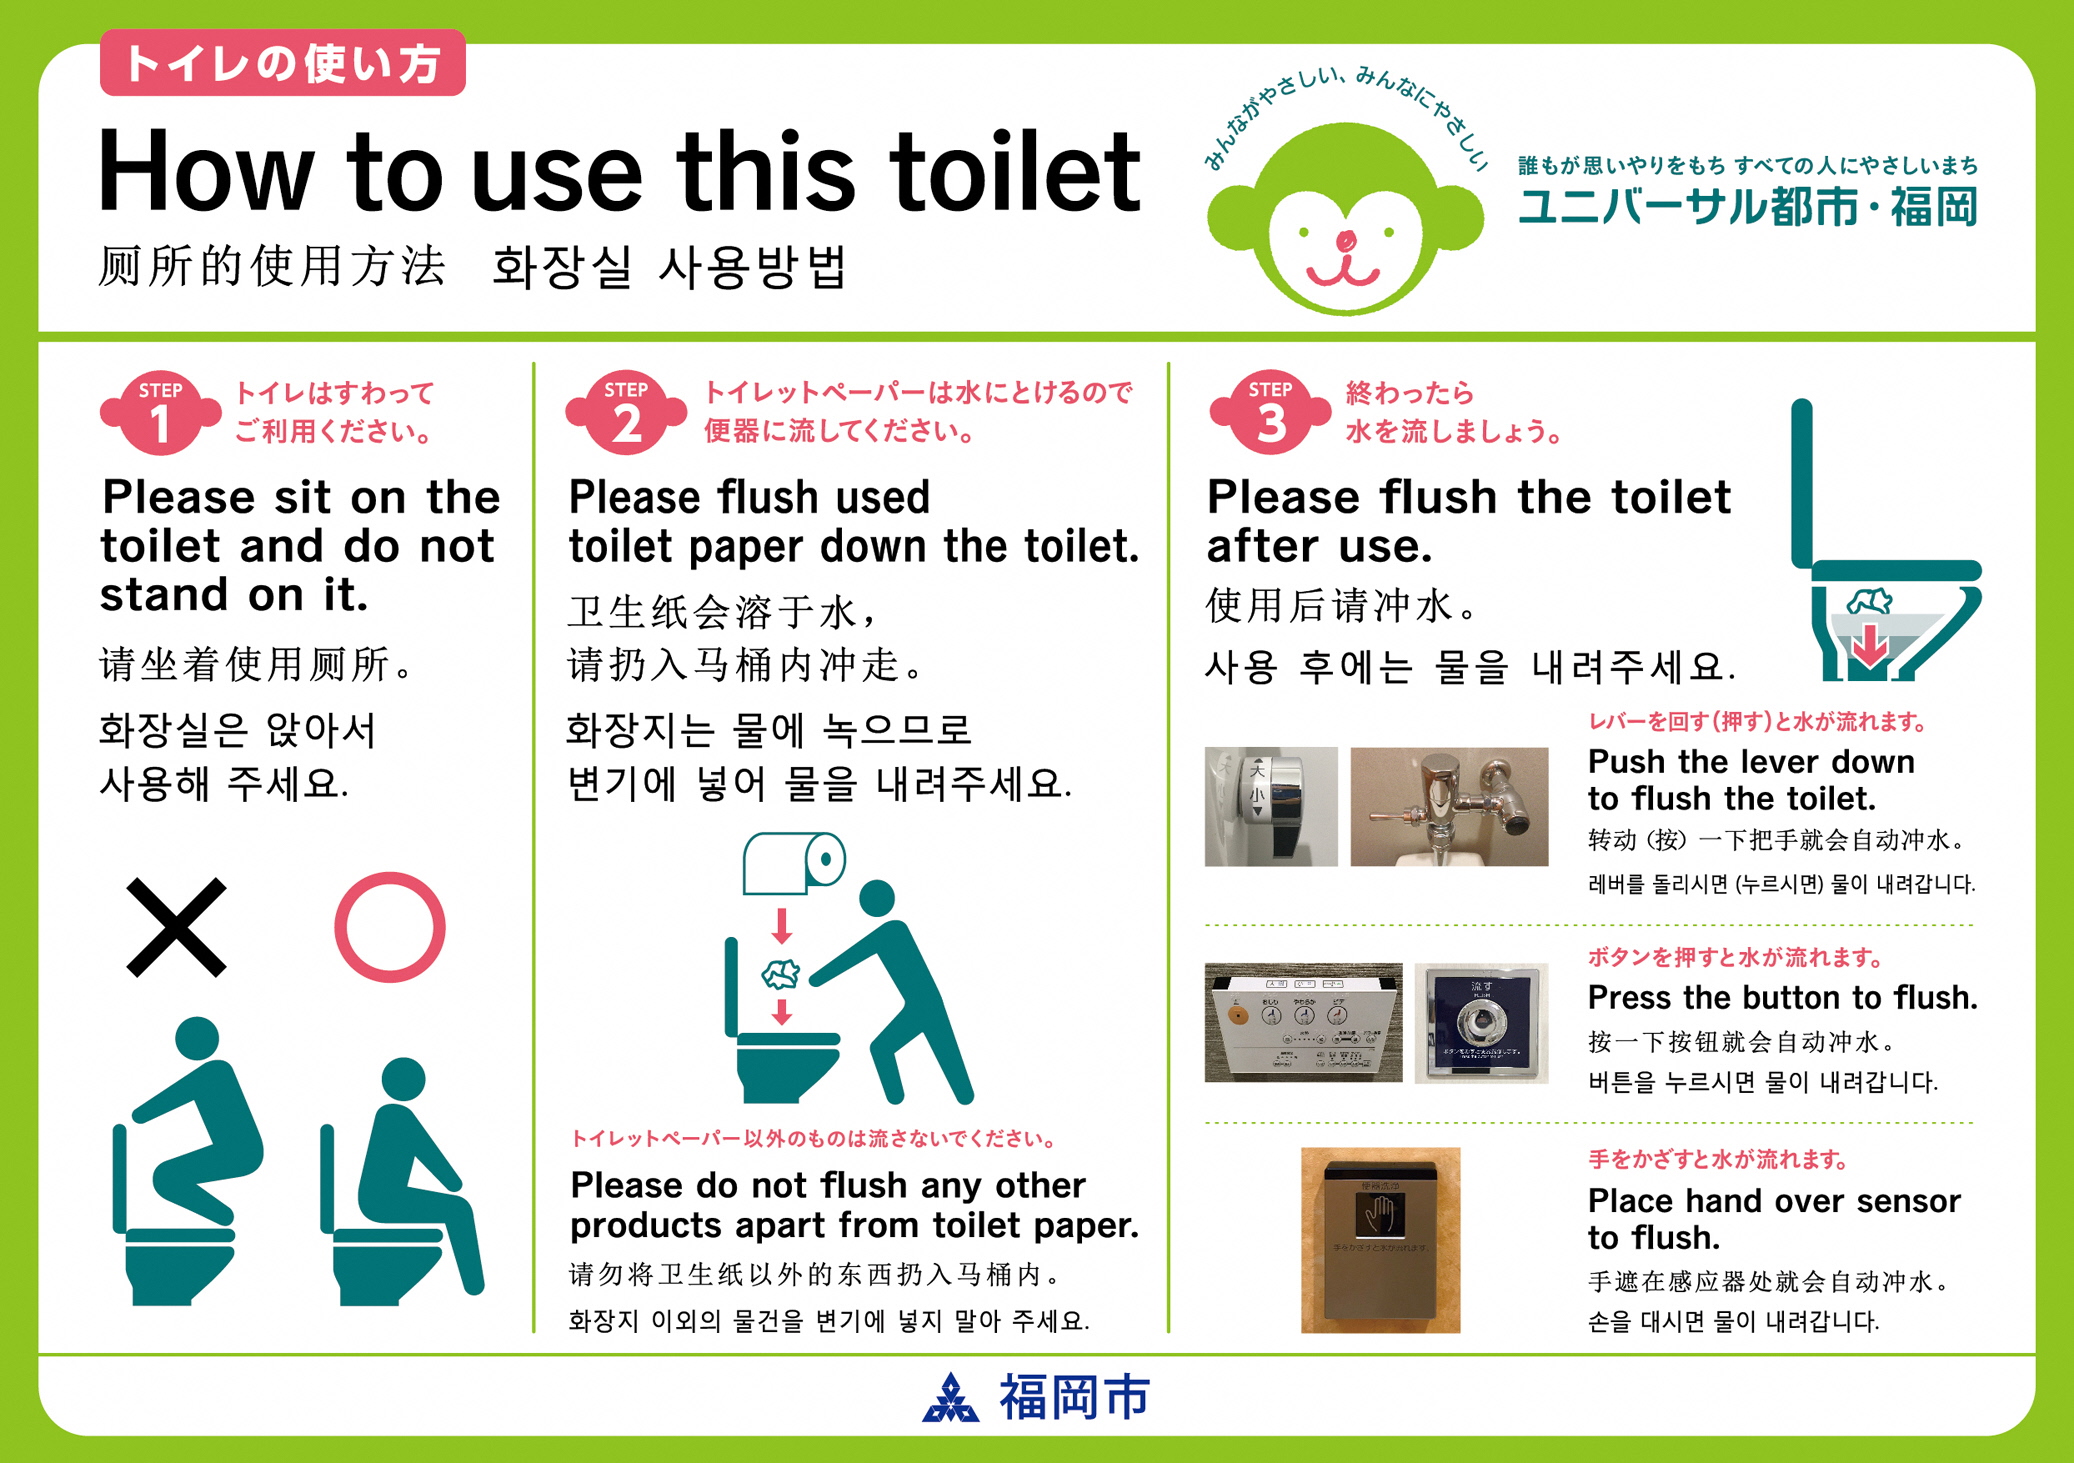 福岡市 「ユニバーサル都市・福岡」トイレの利用マナー啓発ステッカーについて